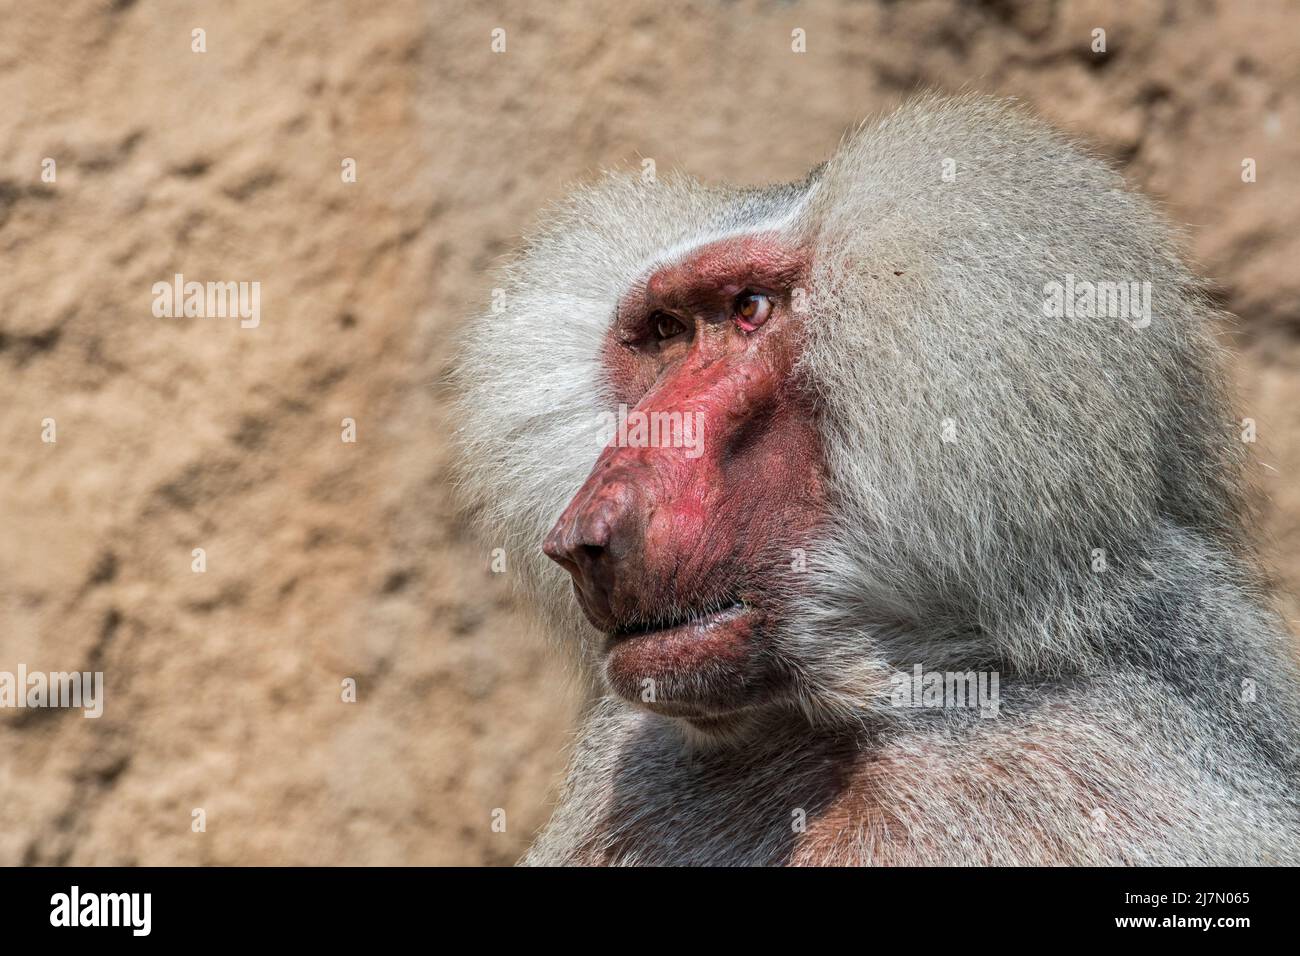 Hamadryas baboon (Papio hamadryas / Simia hamadryas) close-up portrait of male, native to the Horn of Africa Stock Photo